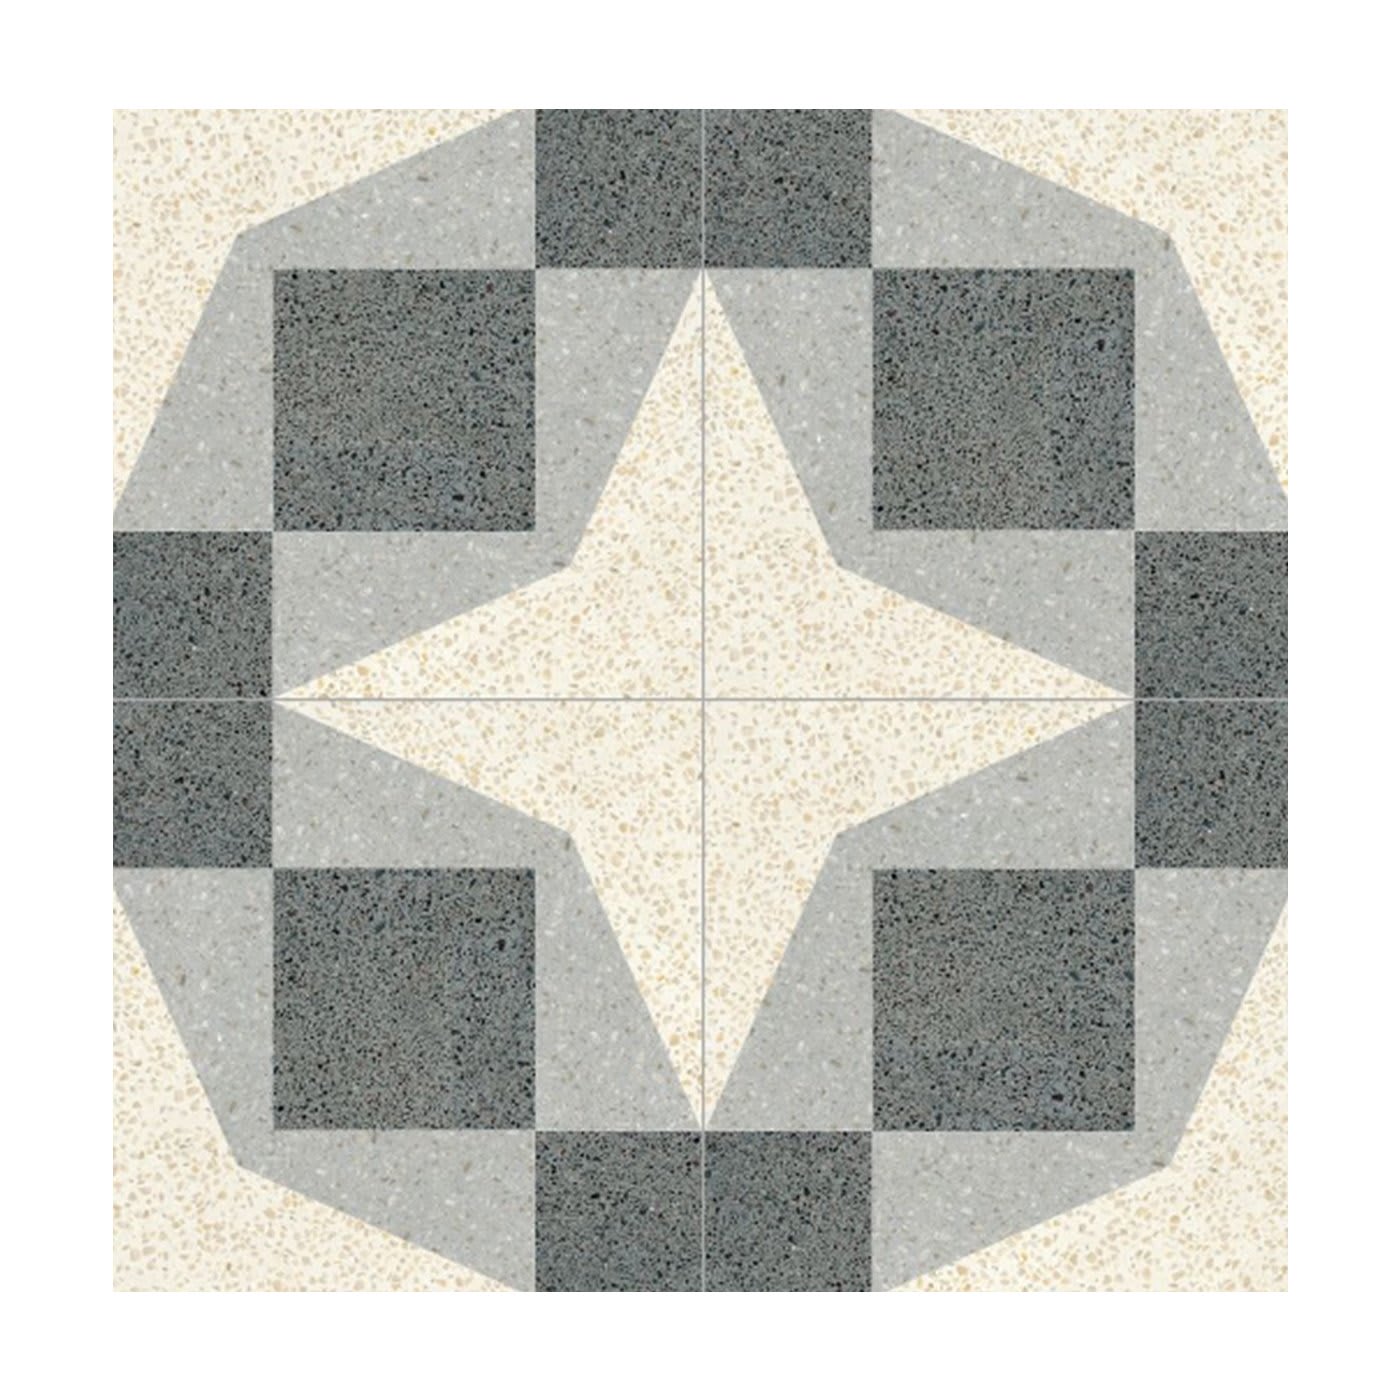 Cassiopea Set of 13 Terrazzo Tiles - Romano